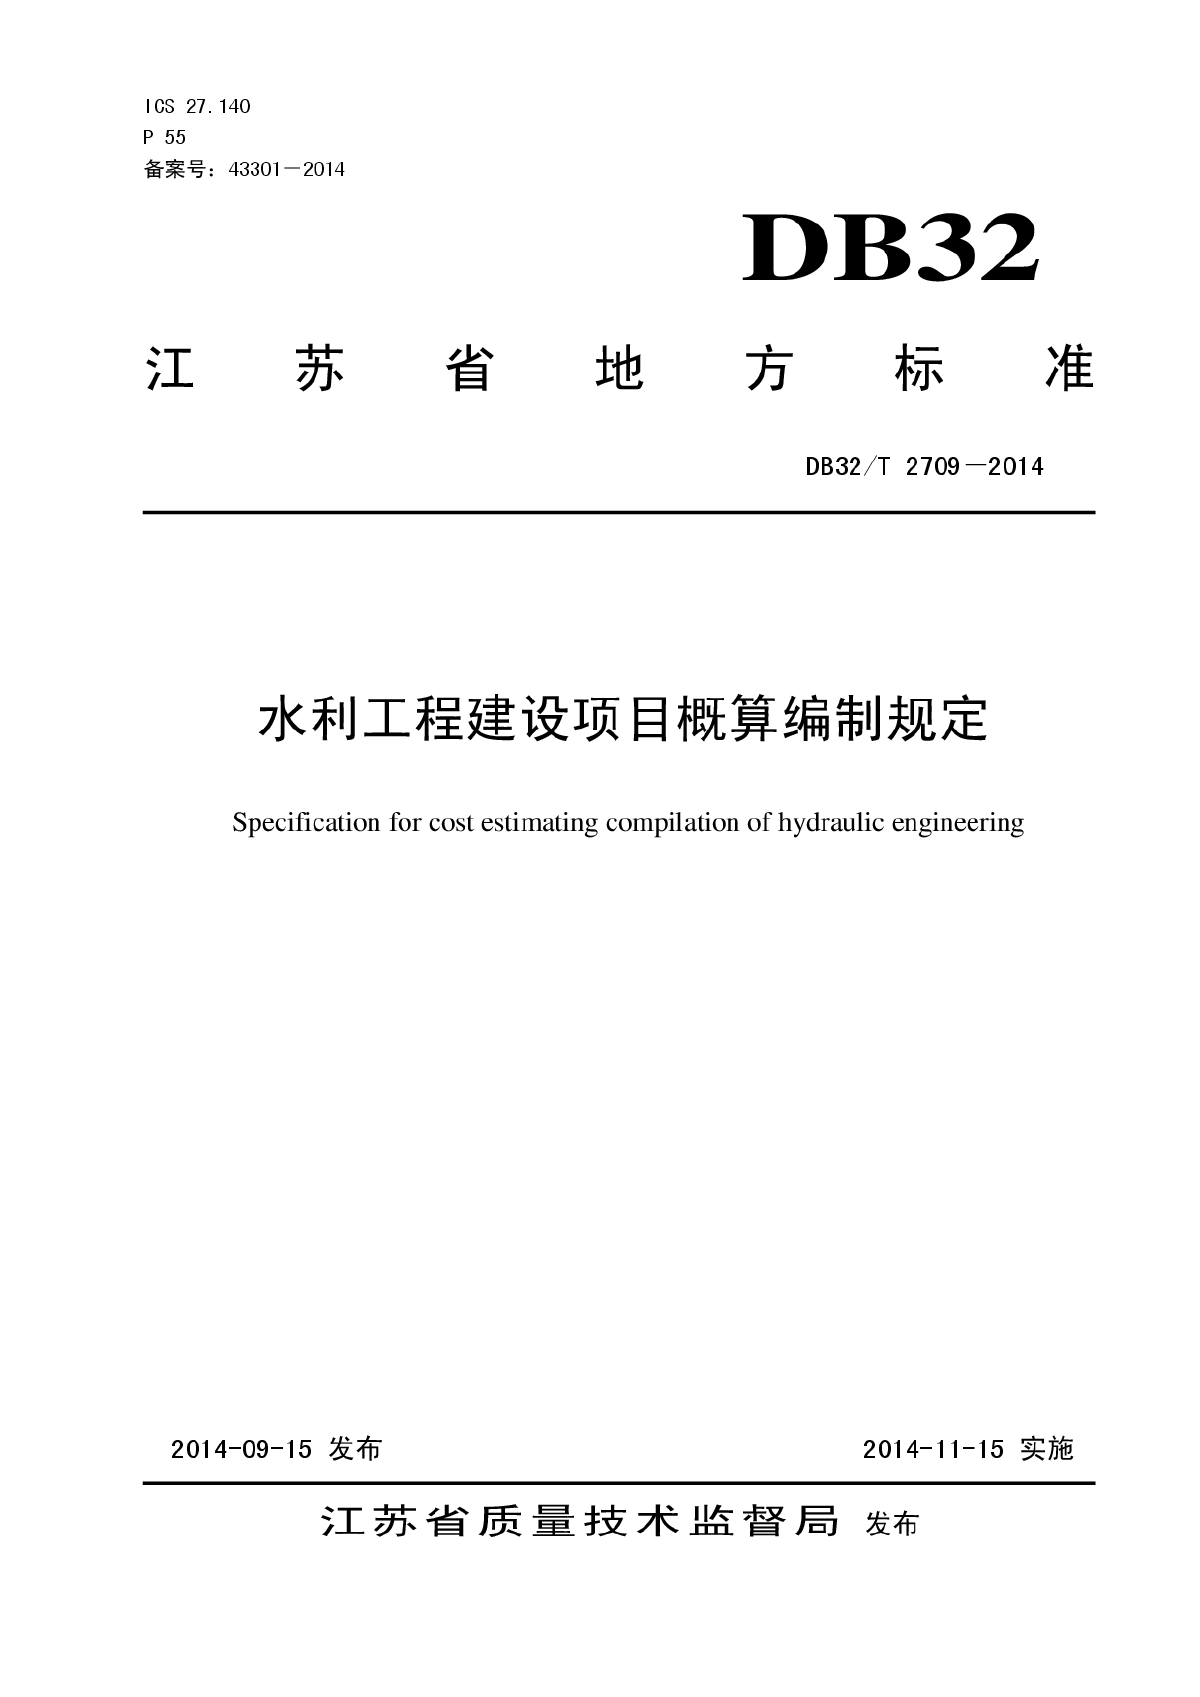 DB32T2709-2014水利工程概算编制规定-图一